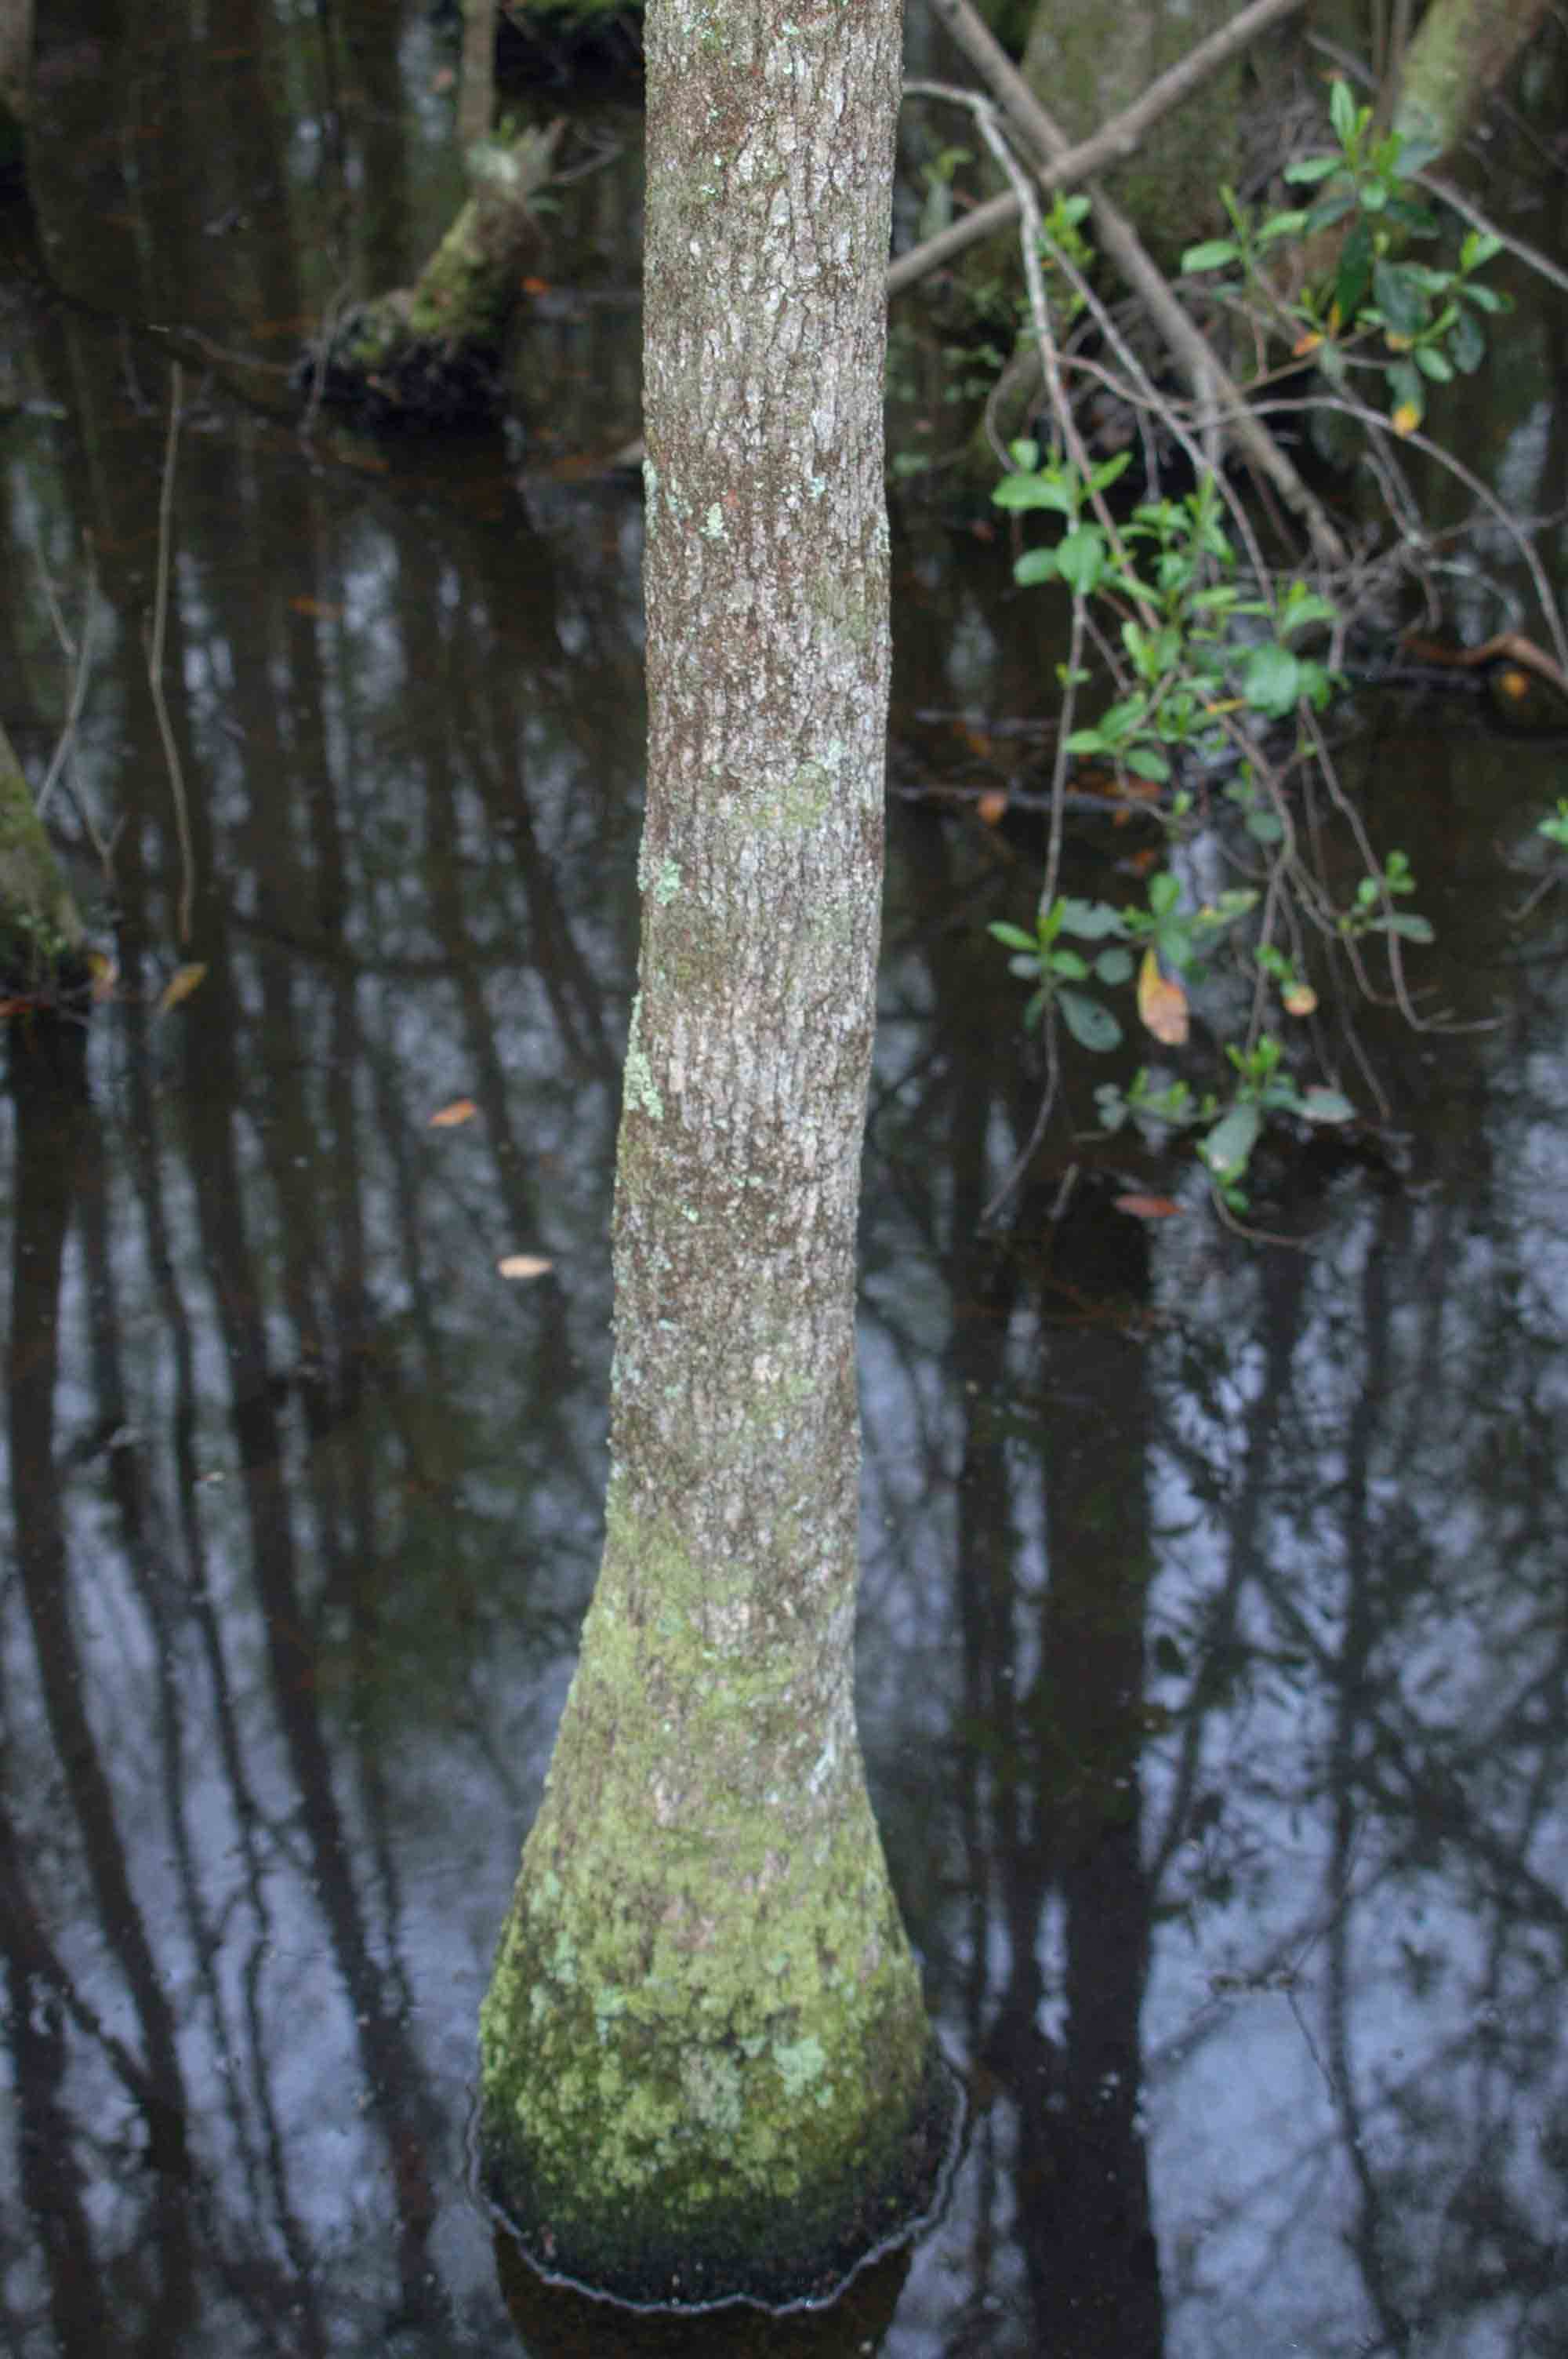 Water tupelo tree, showing bulging base